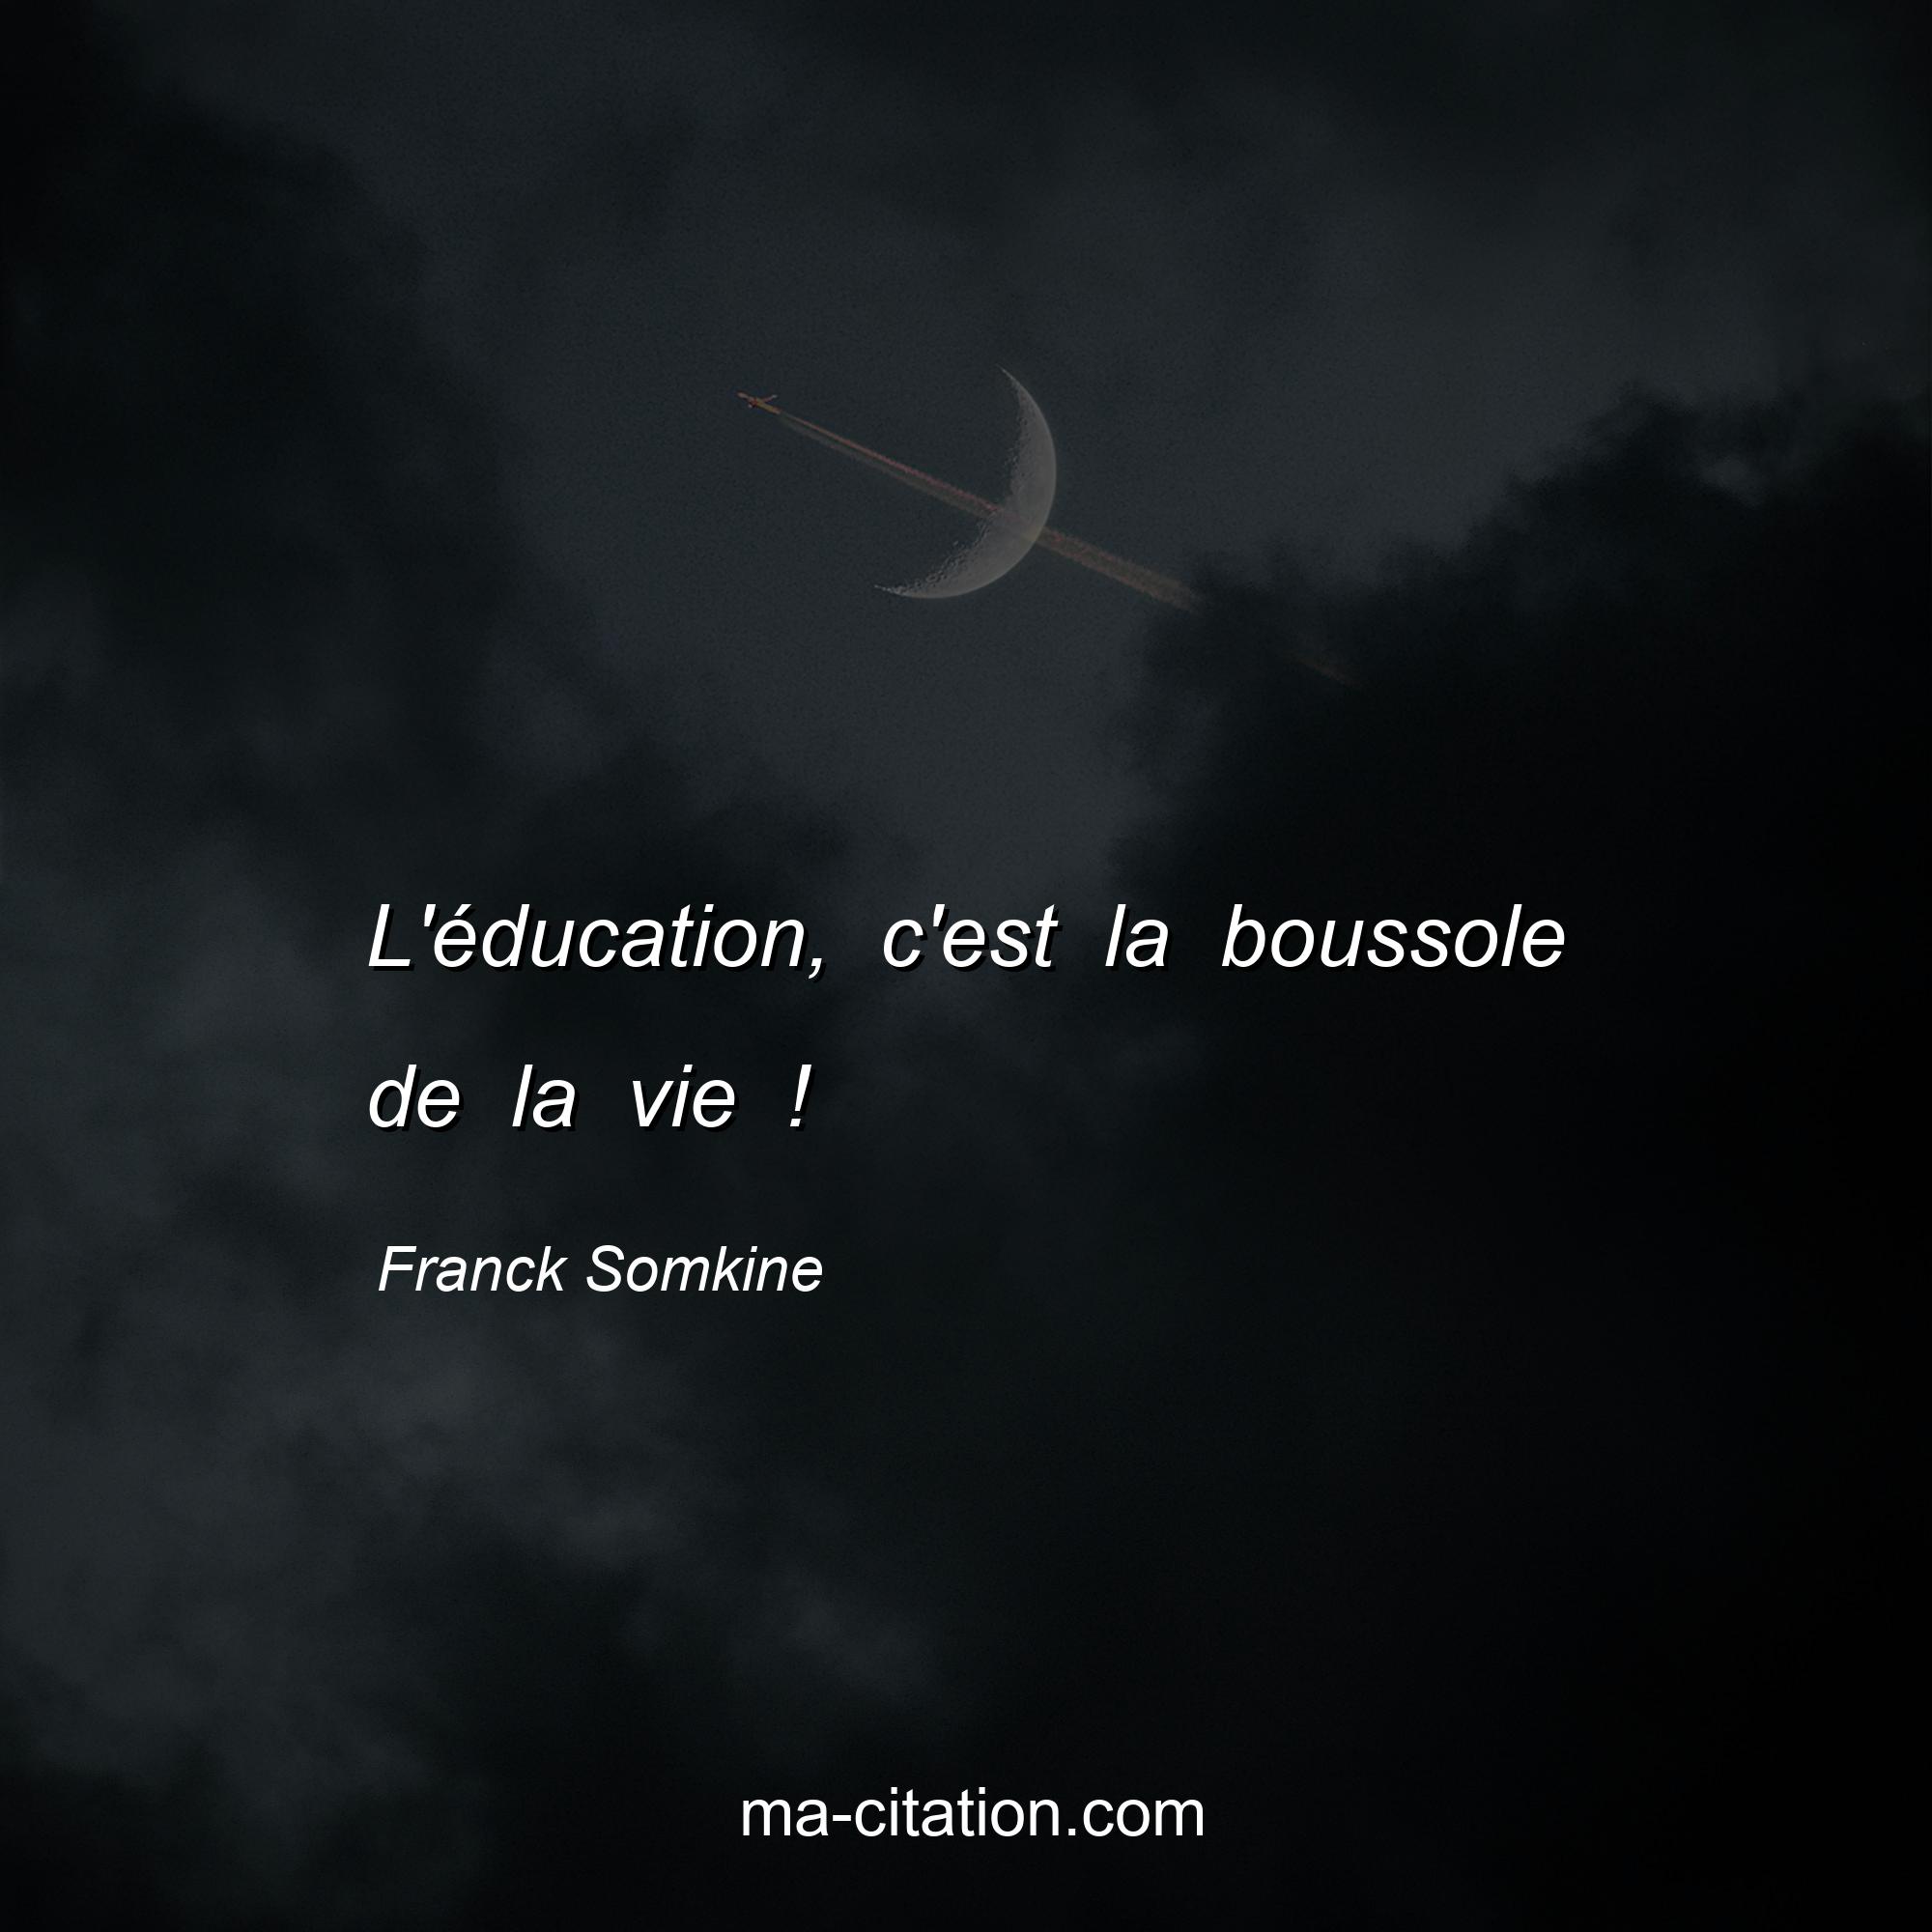 Franck Somkine : L'éducation, c'est la boussole de la vie !